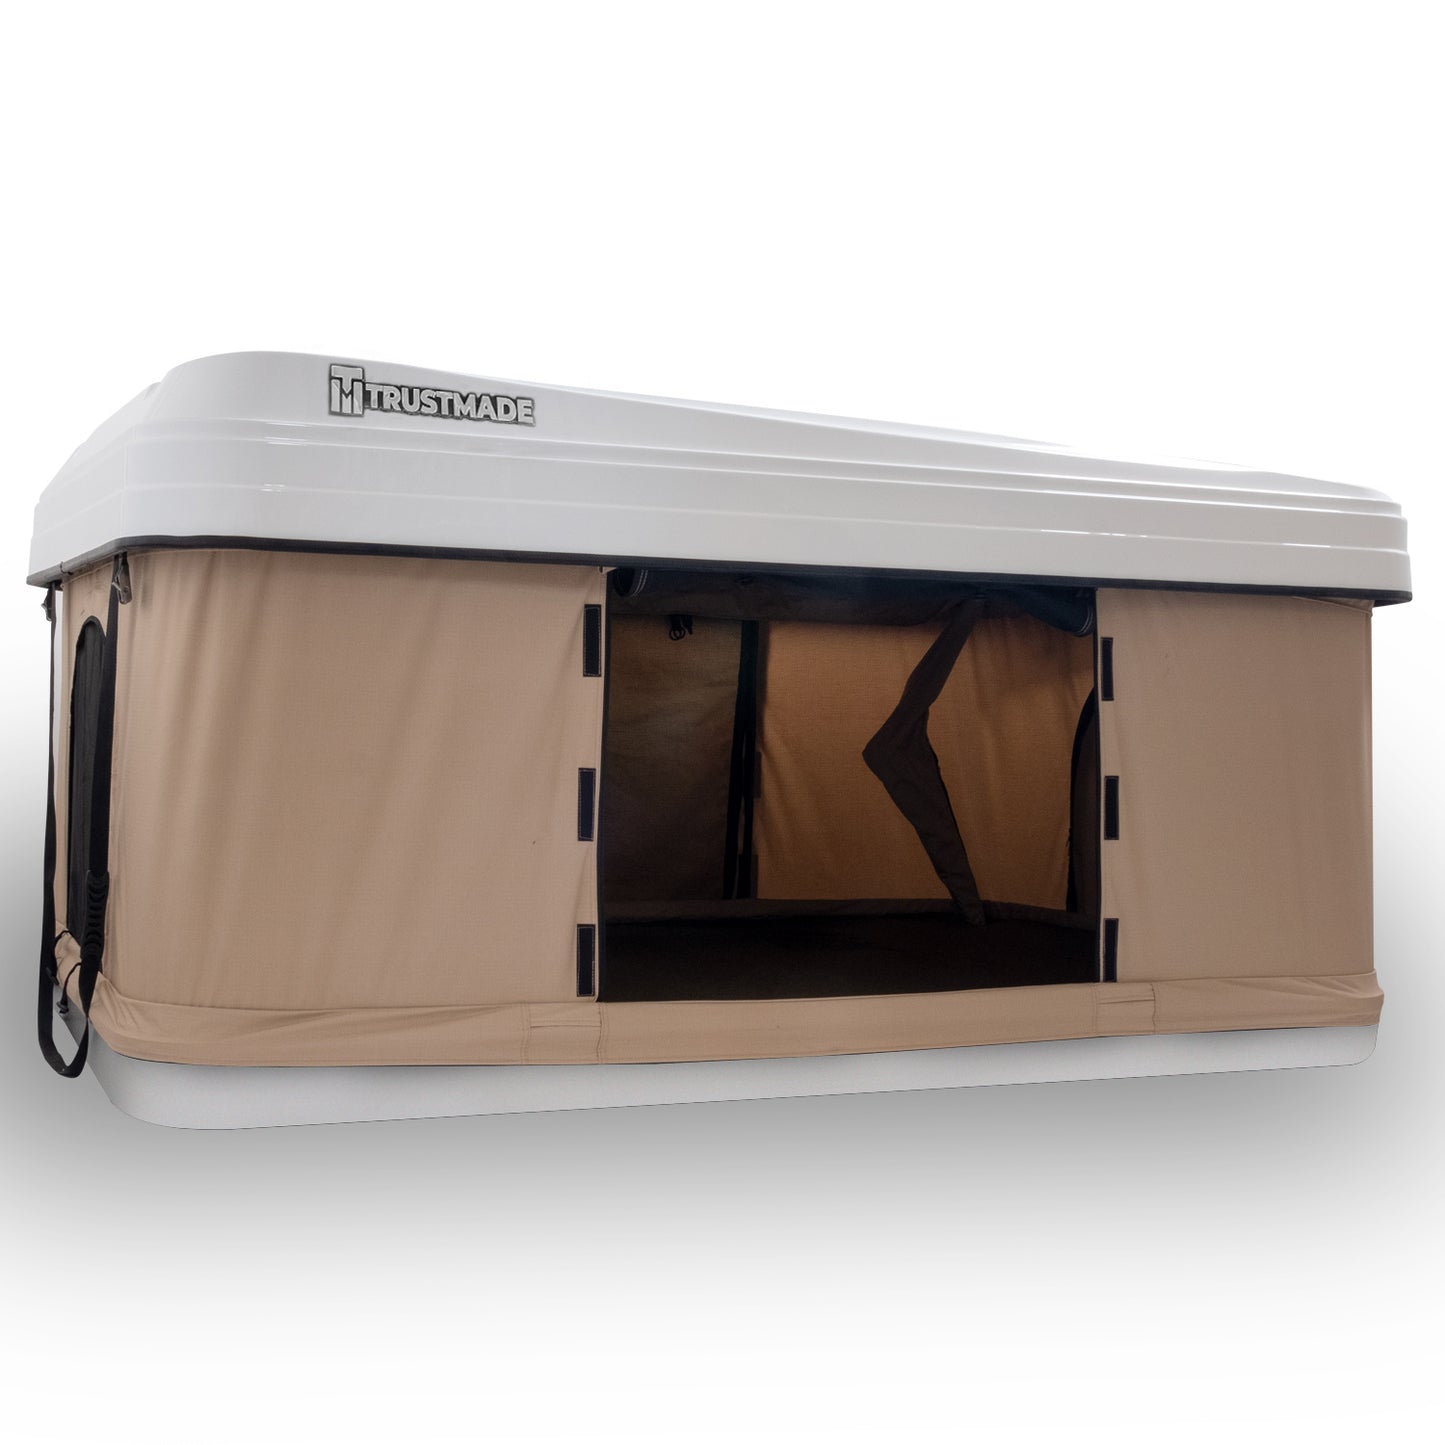 Trustmade Hard Shell Rooftop Tent 2mins Setup 100% Waterproof 50mm Mattress